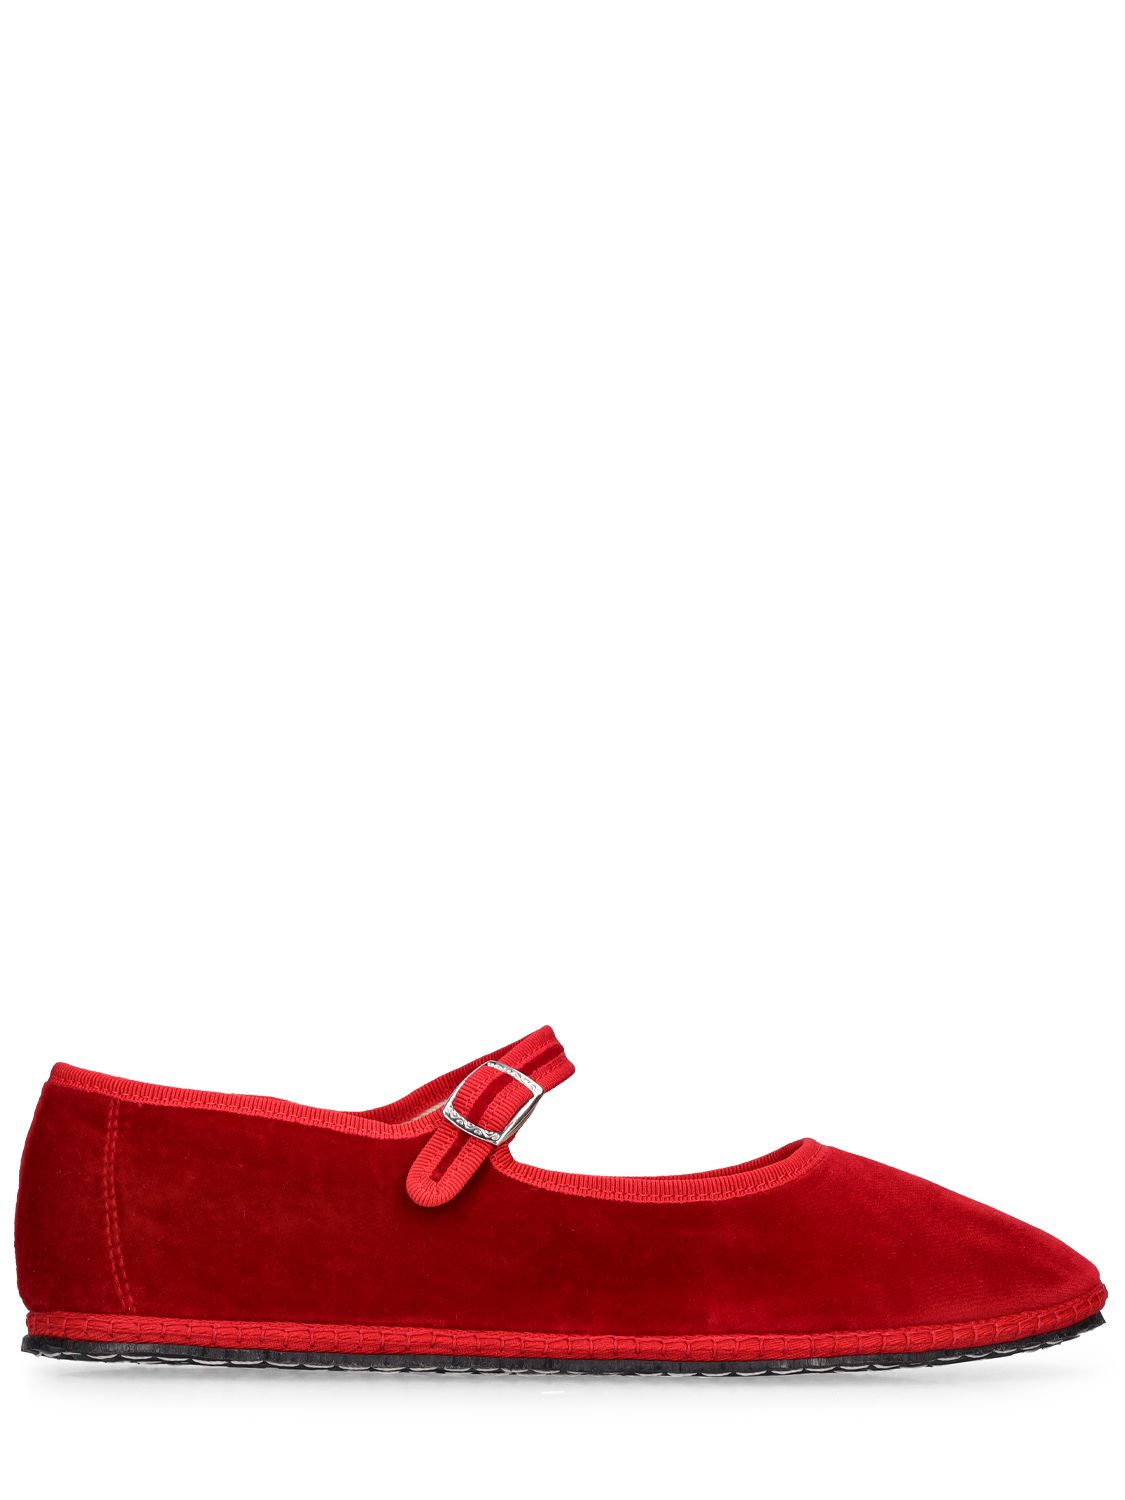 Vibi Venezia 10mm Mary Jane Rosso Velvet Loafers In Red